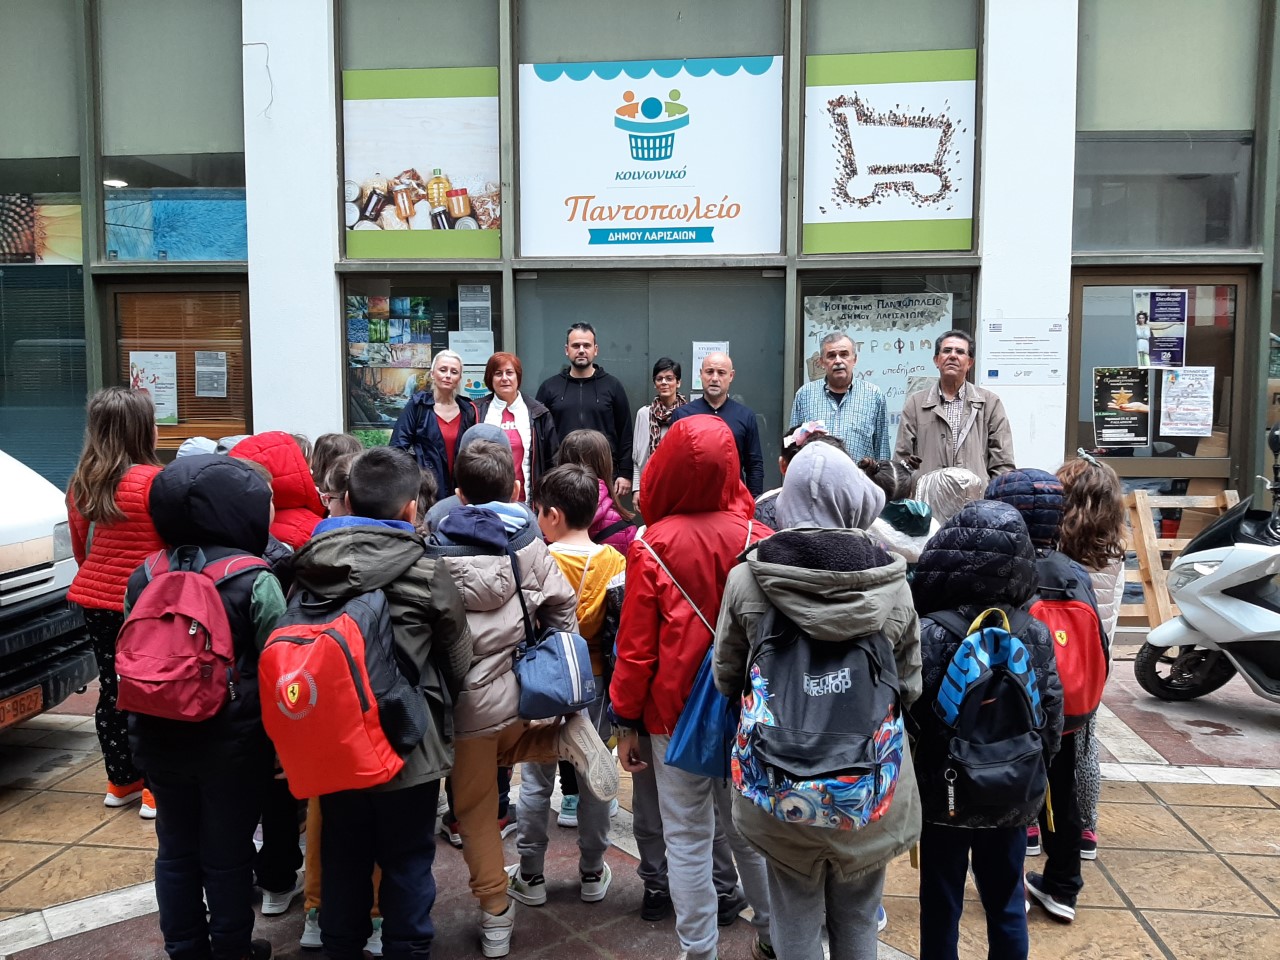 Επίσκεψη του 17ου Δημοτικού Σχολείου στο Κοινωνικό Παντοπωλείο του δήμου Λαρισαίων